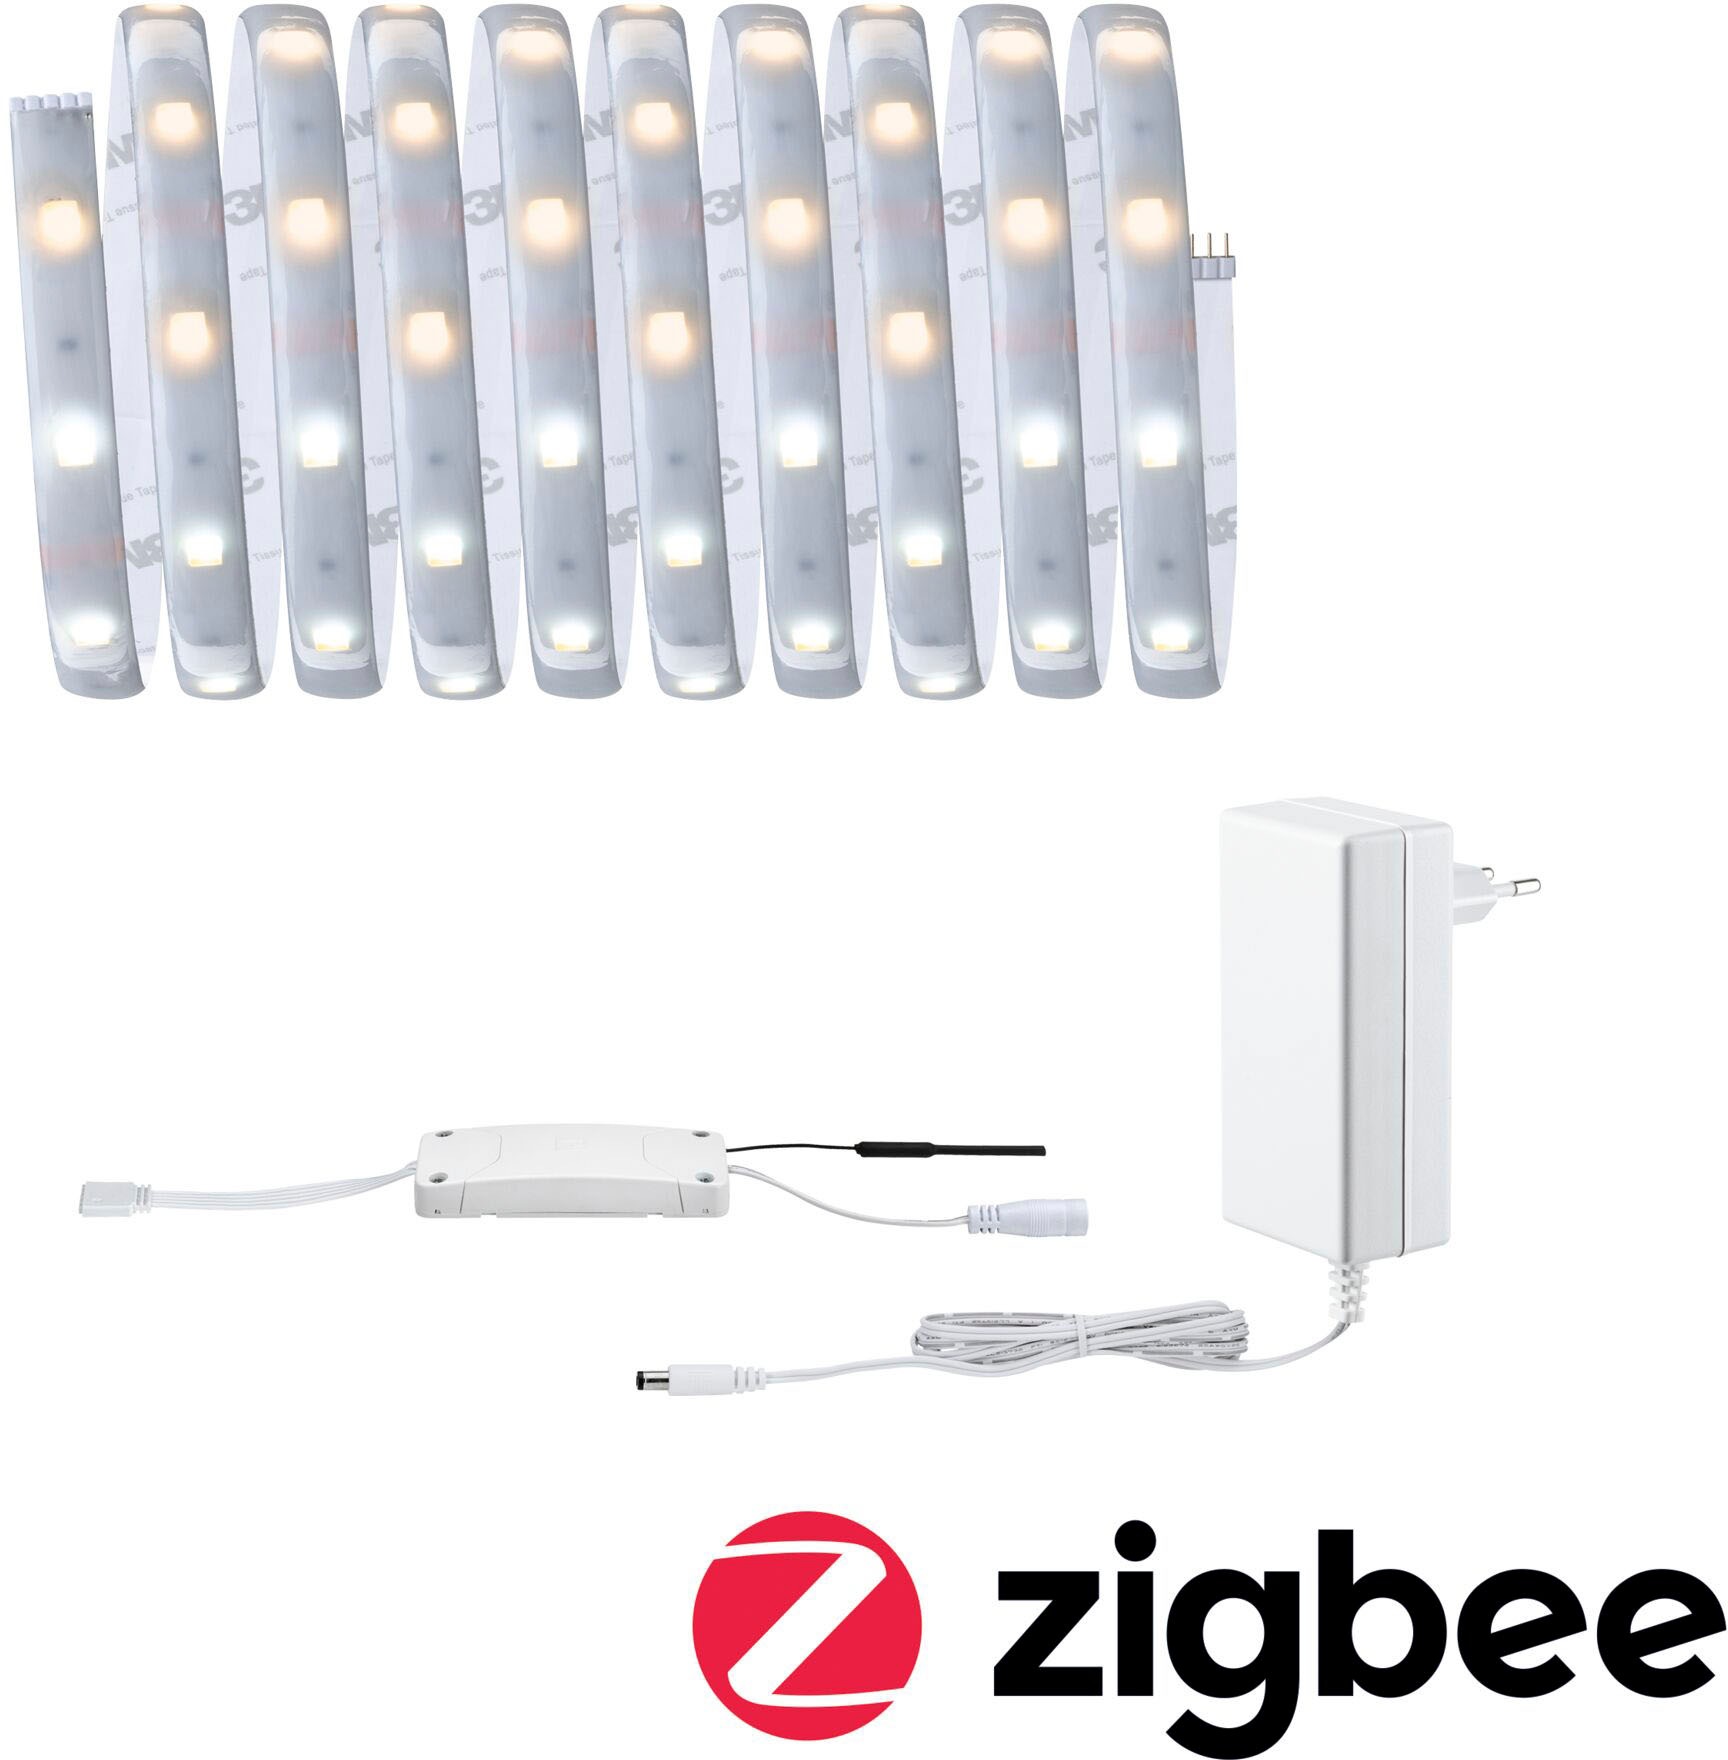 Paulmann LED-Streifen »MaxLED 250 Basisset Smart Home Zigbee IP44 12W 810  810lm«, 1 St.-flammig, 3m, Tunable White, beschichtet kaufen | BAUR